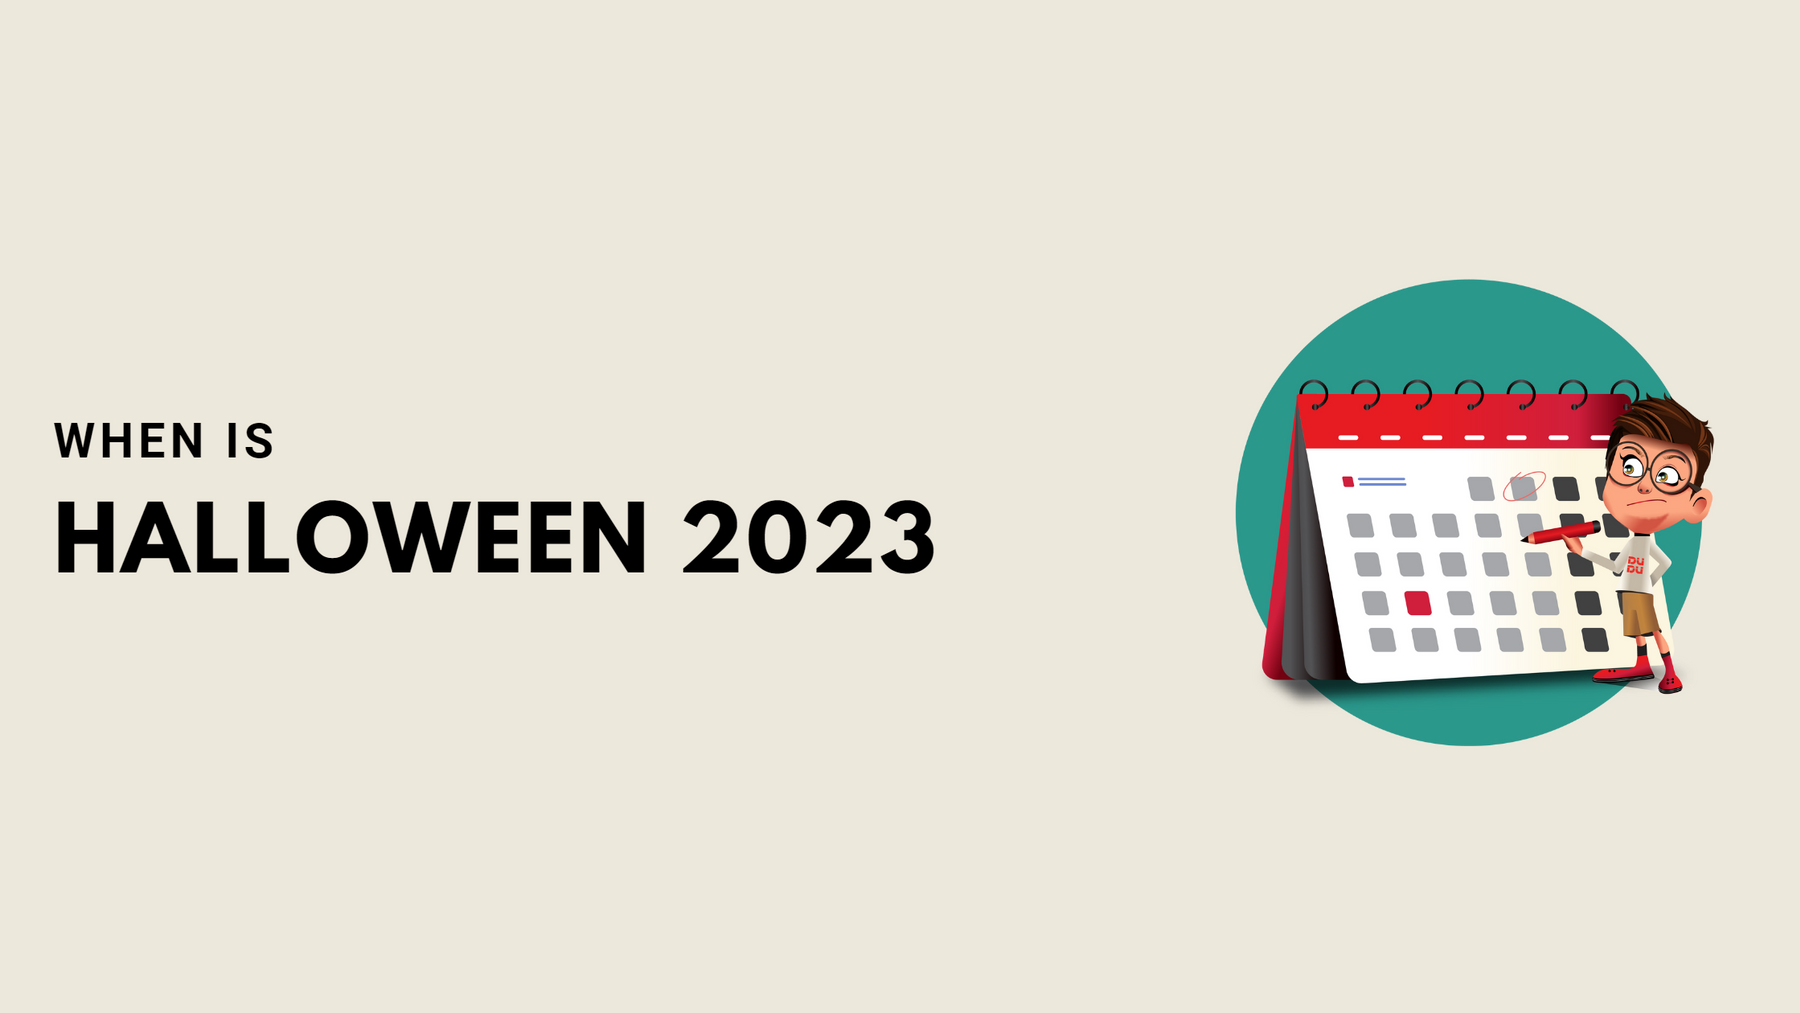 When Is Halloween 2023?